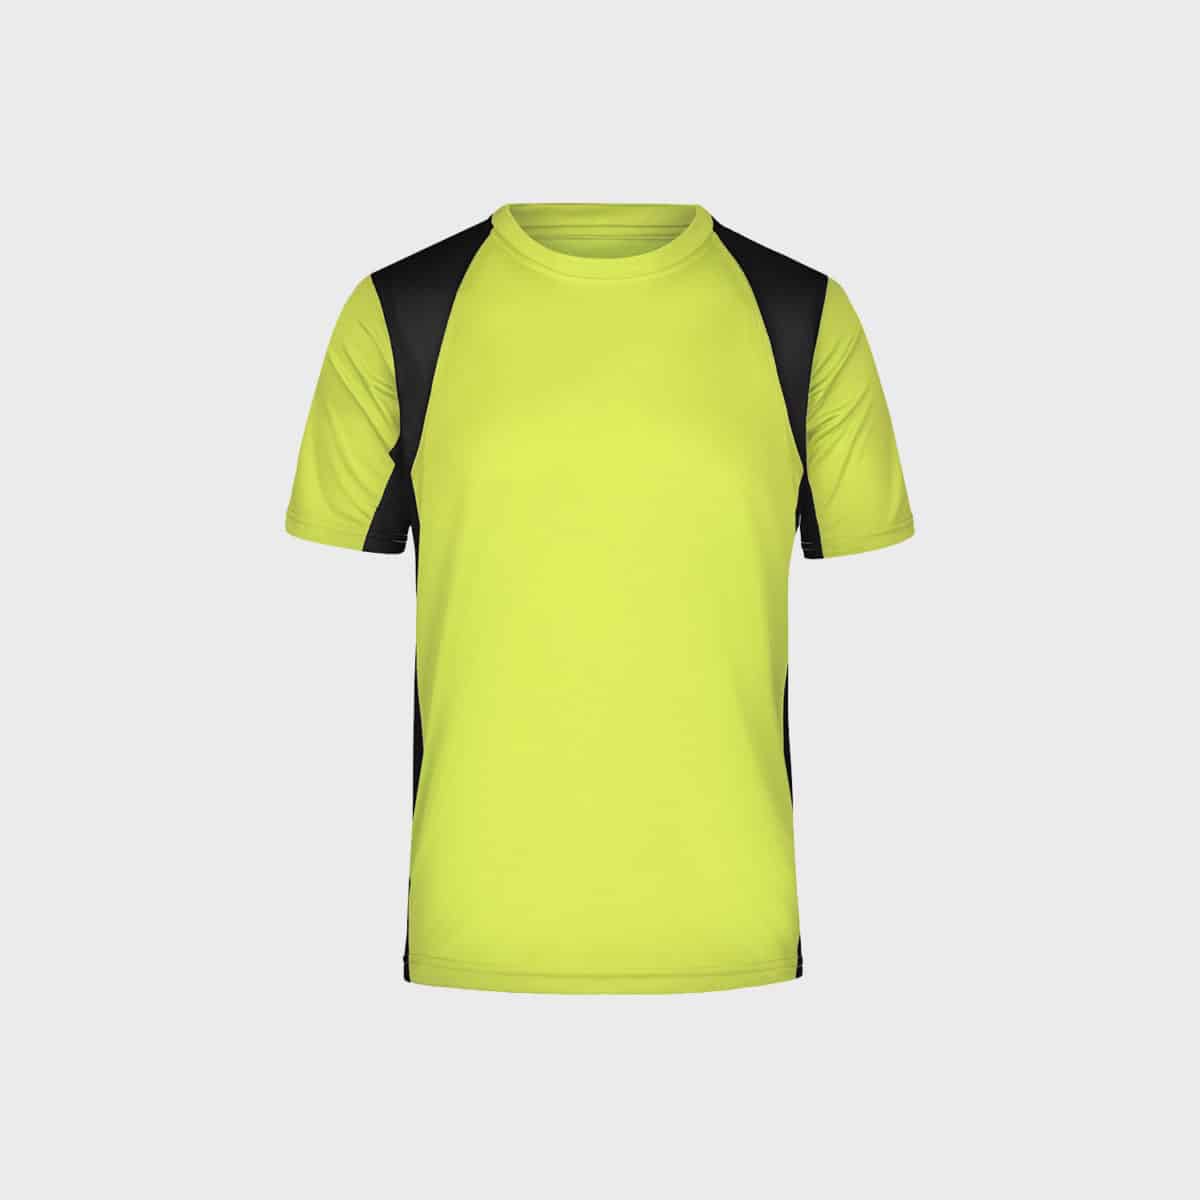 funktions-running-sport-t-shirt-herren-fluo-yellow-black-kaufen-besticken_stickmanufaktur